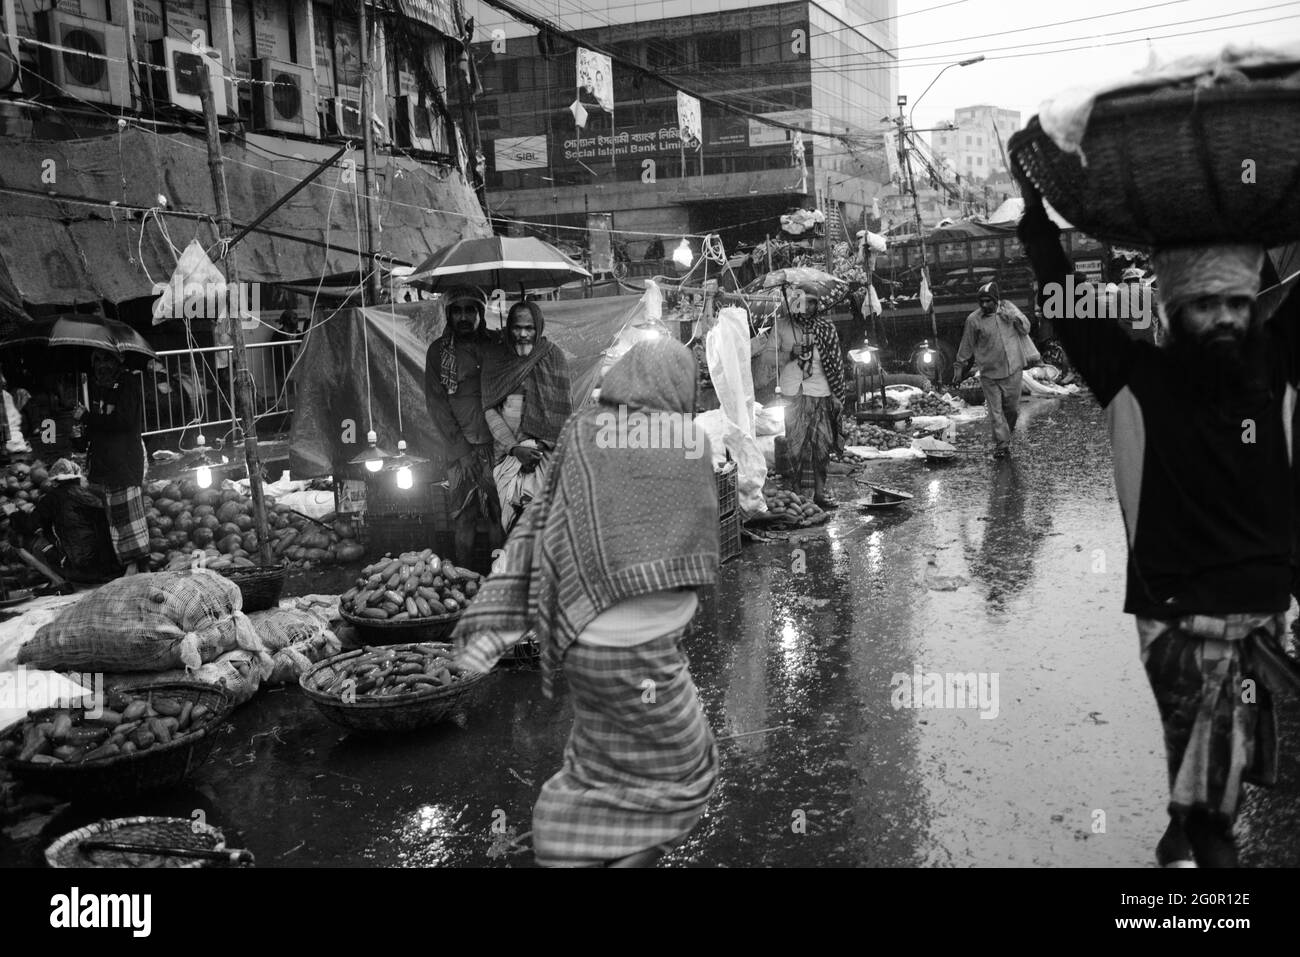 Un jour pluvieux au marché de gros de Karwan Bazar à Dhaka, au Bangladesh. Banque D'Images